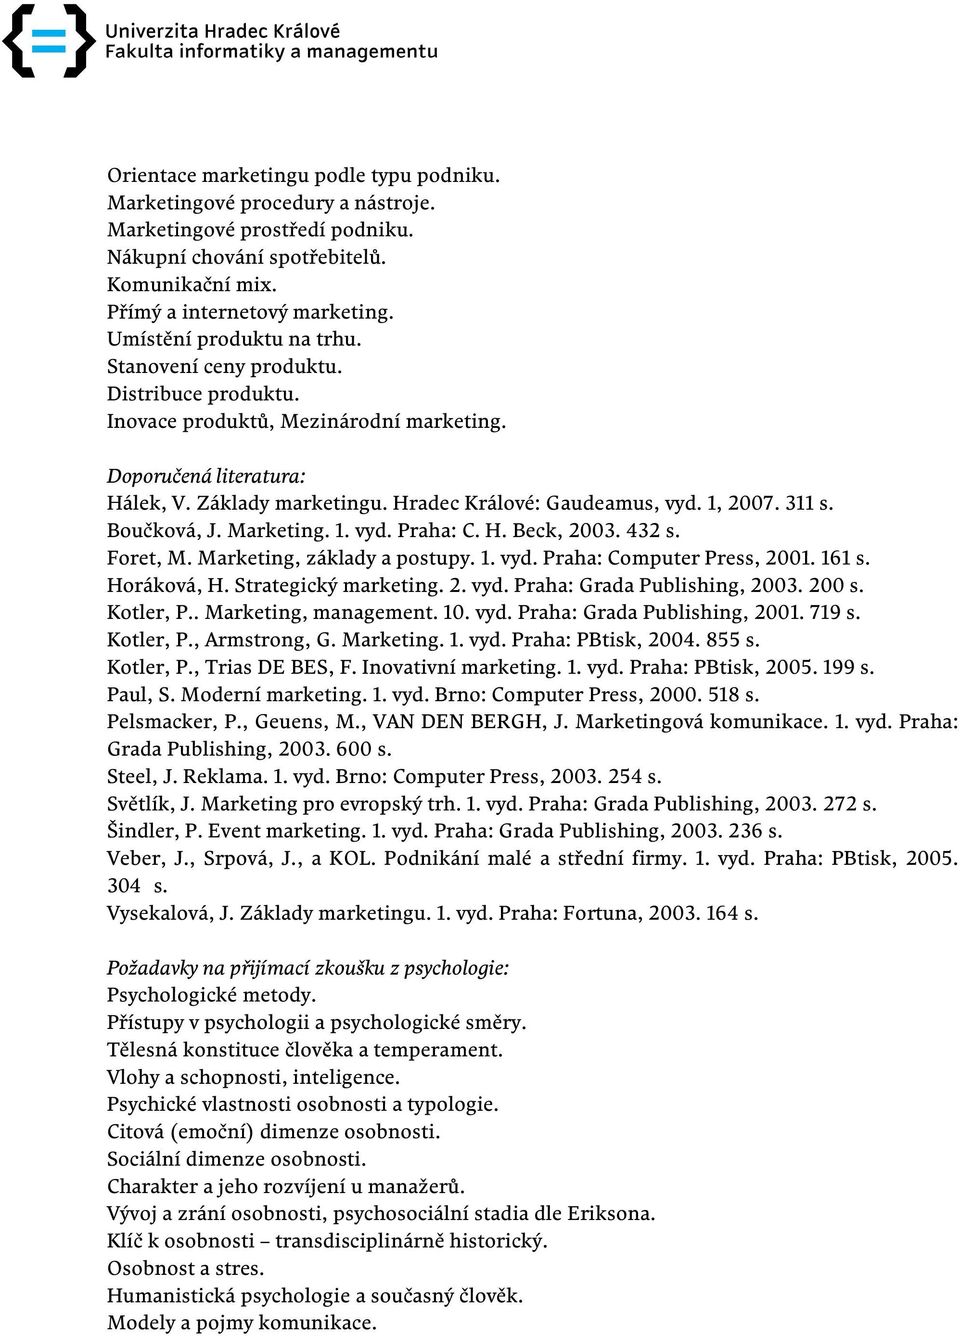 Boučková, J. Marketing. 1. vyd. Praha: C. H. Beck, 2003. 432 s. Foret, M. Marketing, základy a postupy. 1. vyd. Praha: Computer Press, 2001. 161 s. Horáková, H. Strategický marketing. 2. vyd. Praha: Grada Publishing, 2003.